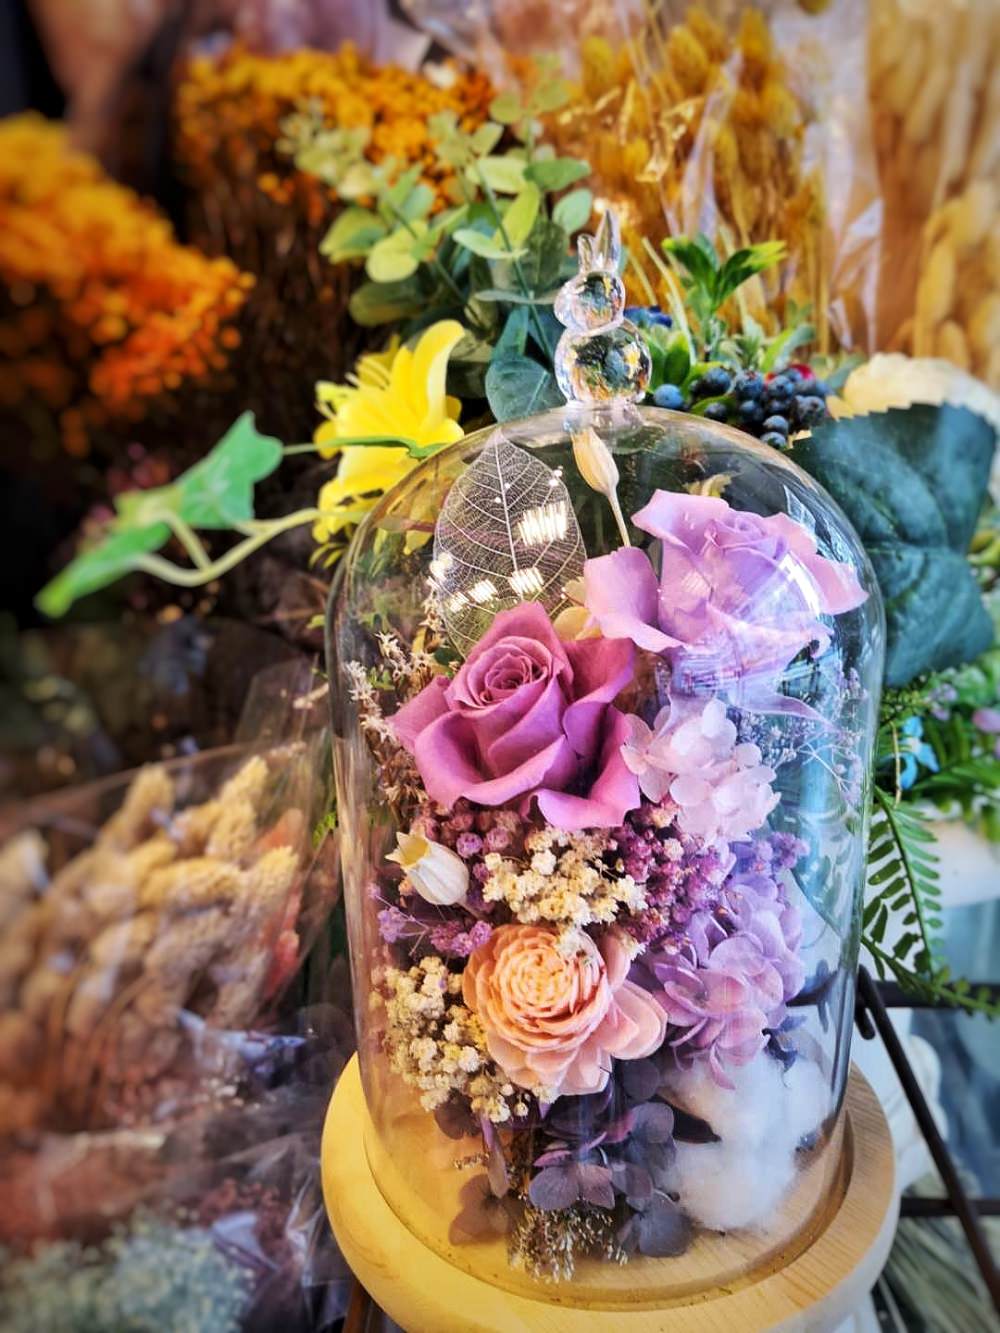 嚐花閣花店的永生玻璃花盅也太浪漫唯美了！曾有學員指名上課教作玻璃花盅，因製作繁複，花了8小時才完成。